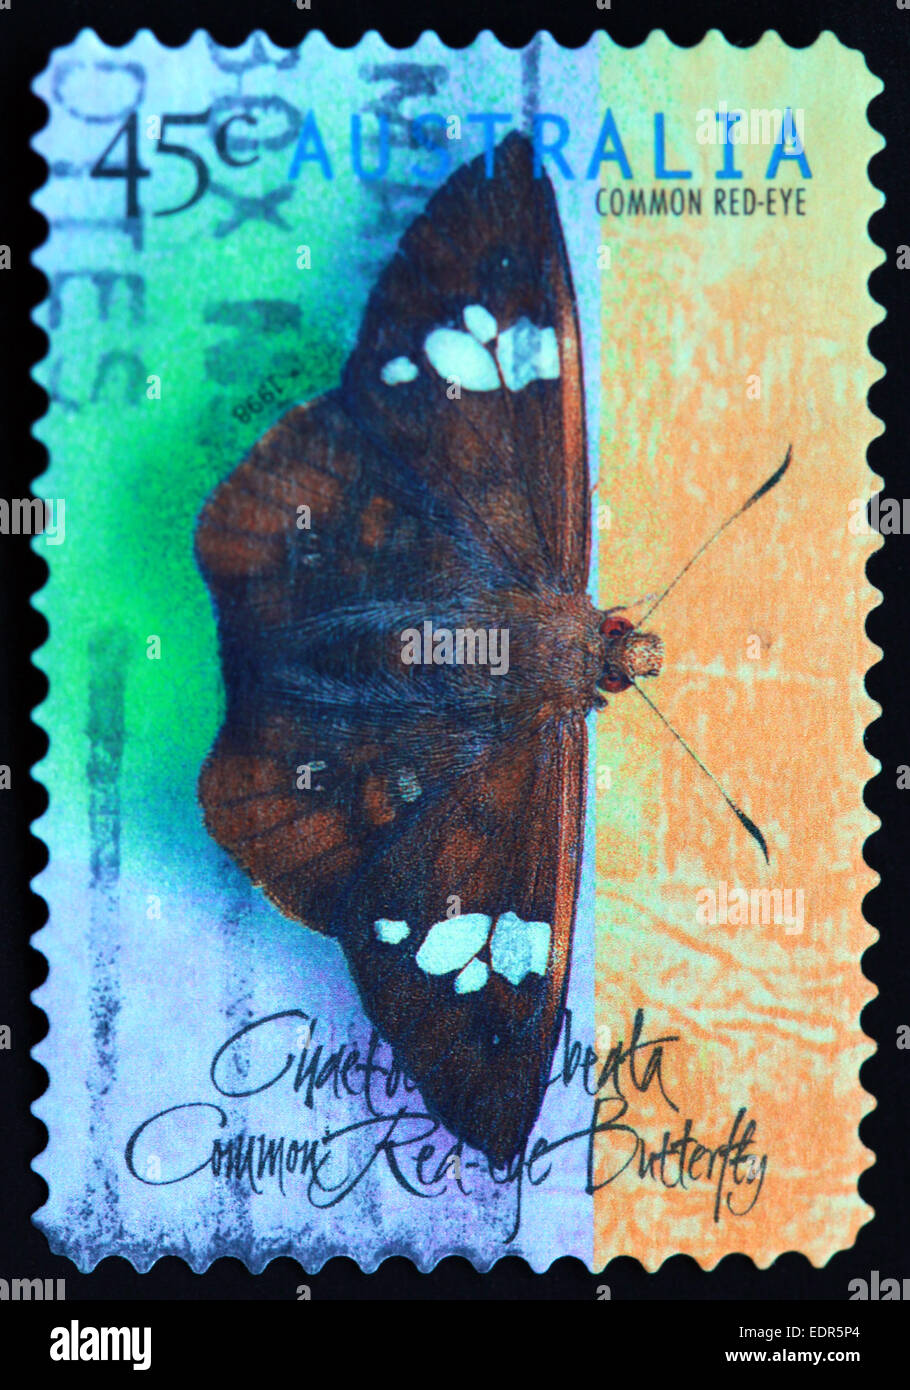 Verwendet und Poststempel Australien / Austrailian Stempel gemeinsame rote-Augen-45c 1998 Stockfoto